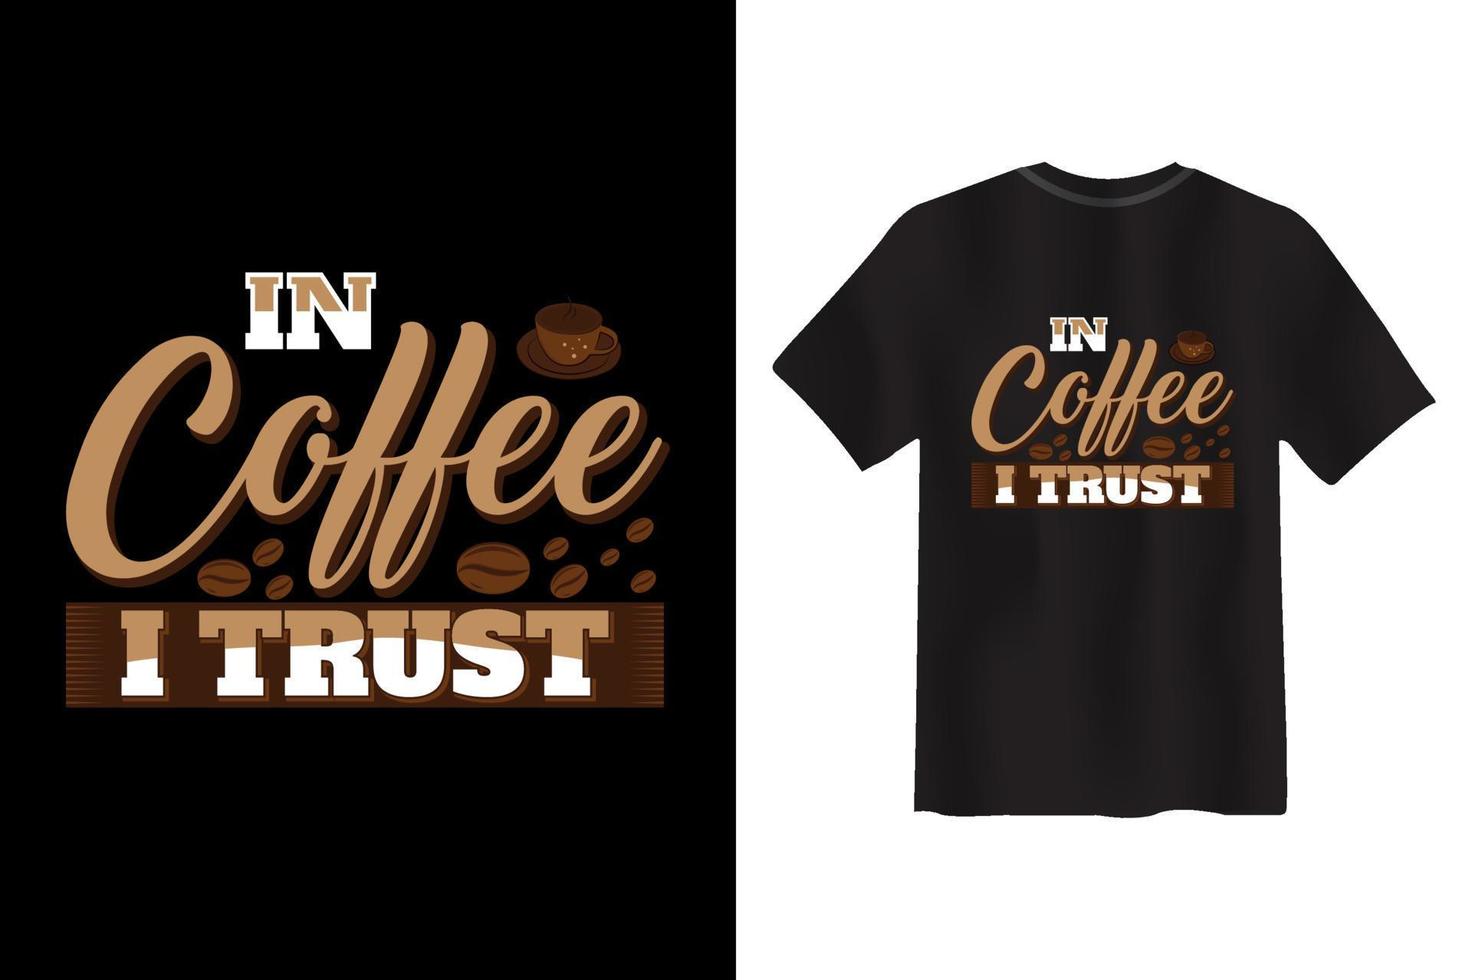 kaffe ordspråk och Citat, rolig kaffe t-shirt design vektor